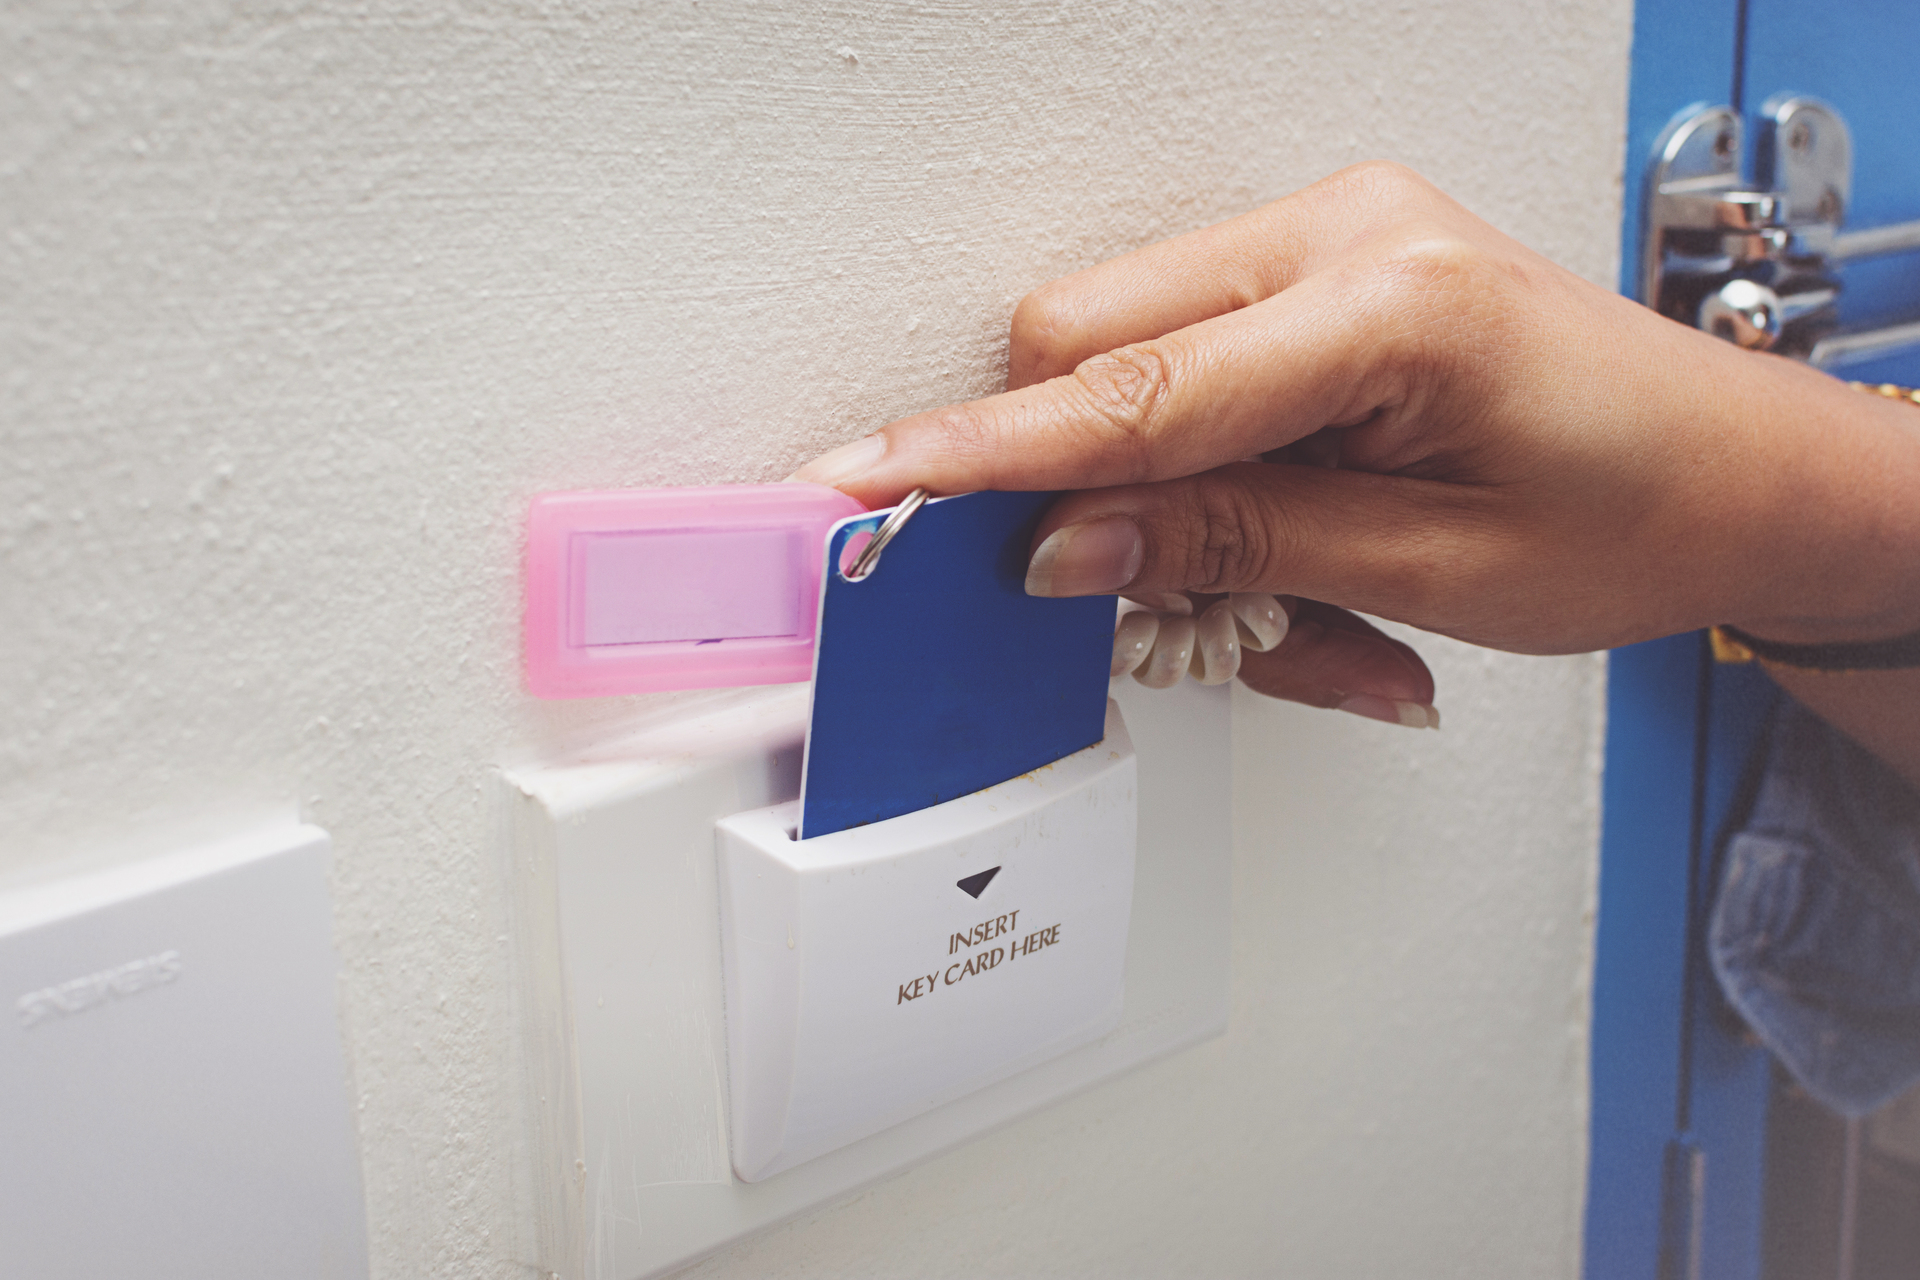 En hand håller ett blått nyckelkort framför en vit elektronisk läsare med texten "INSERT KEY CARD HERE". Läsaren är monterad på en vit vägg, och ovanför den finns en rosa plastficka. Bakgrunden visar en del av en blå dörr med en silverfärgad låsmekanism